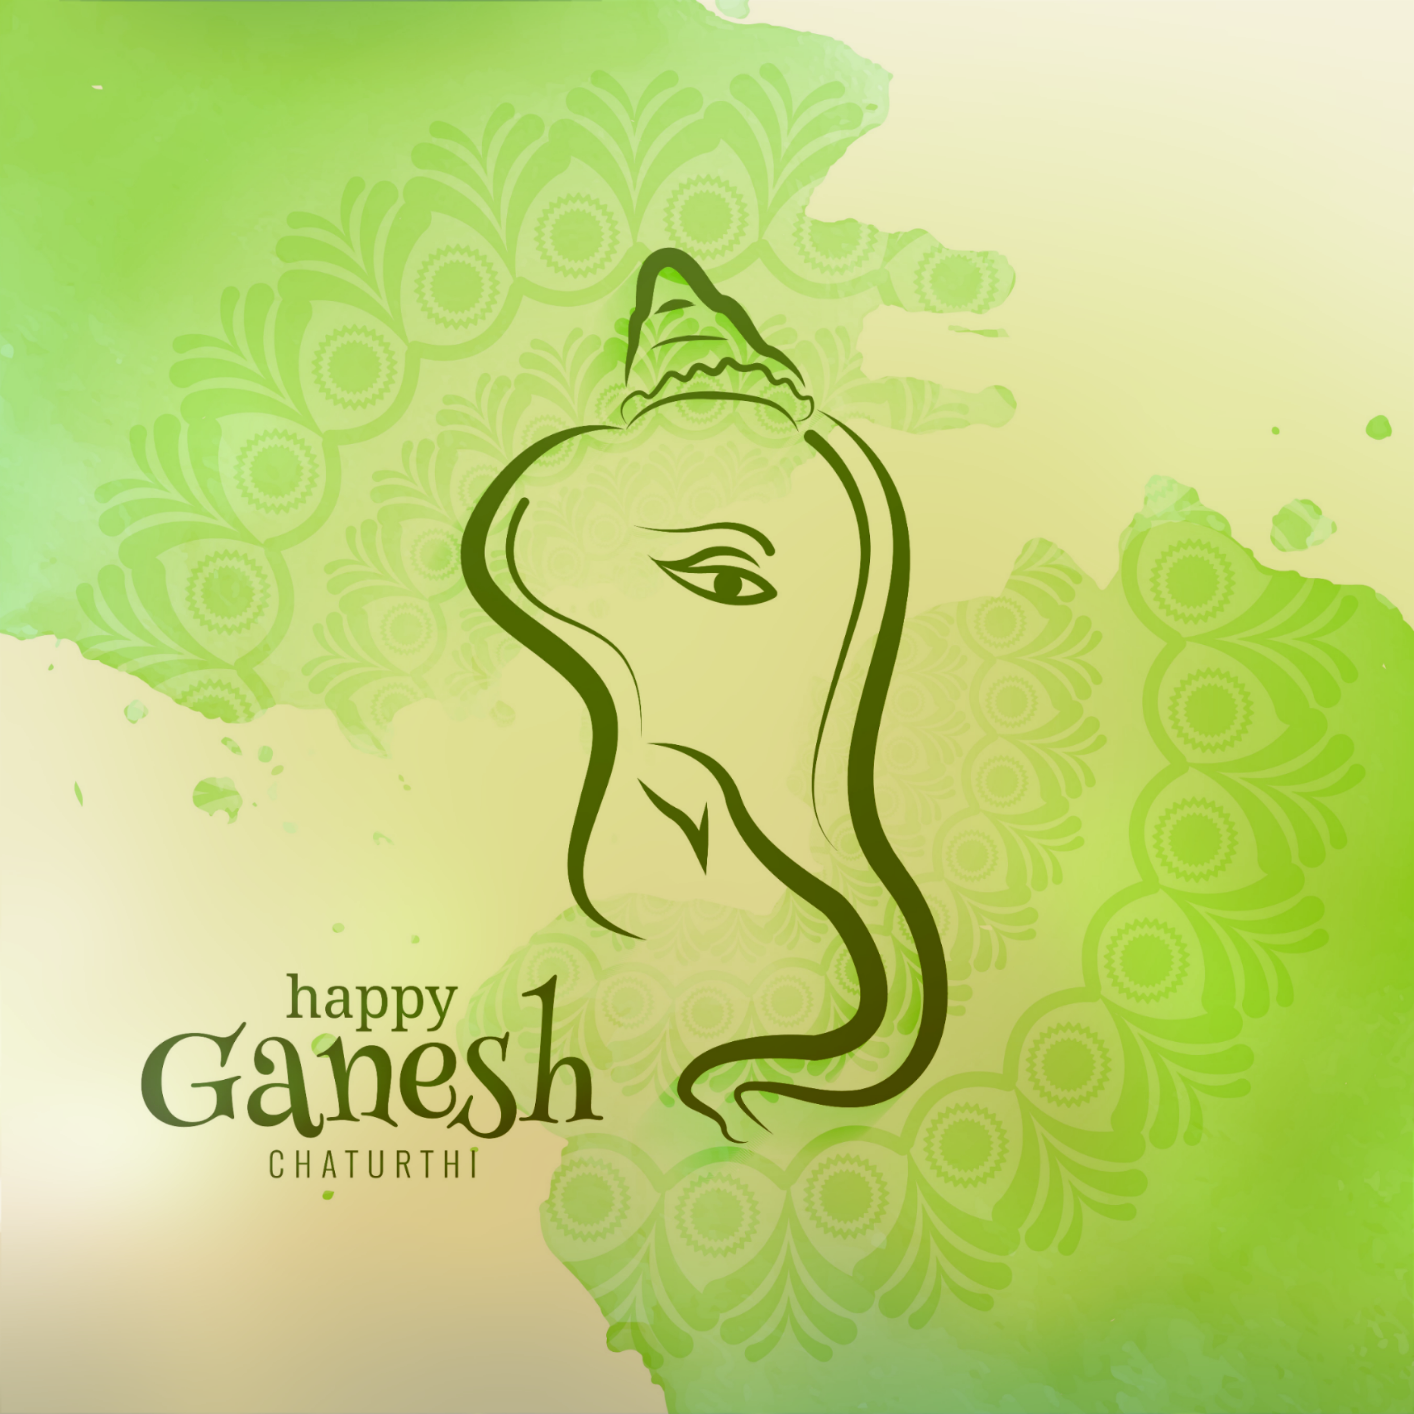 Whatsapp Ganesh Chaturthi Wishes Images